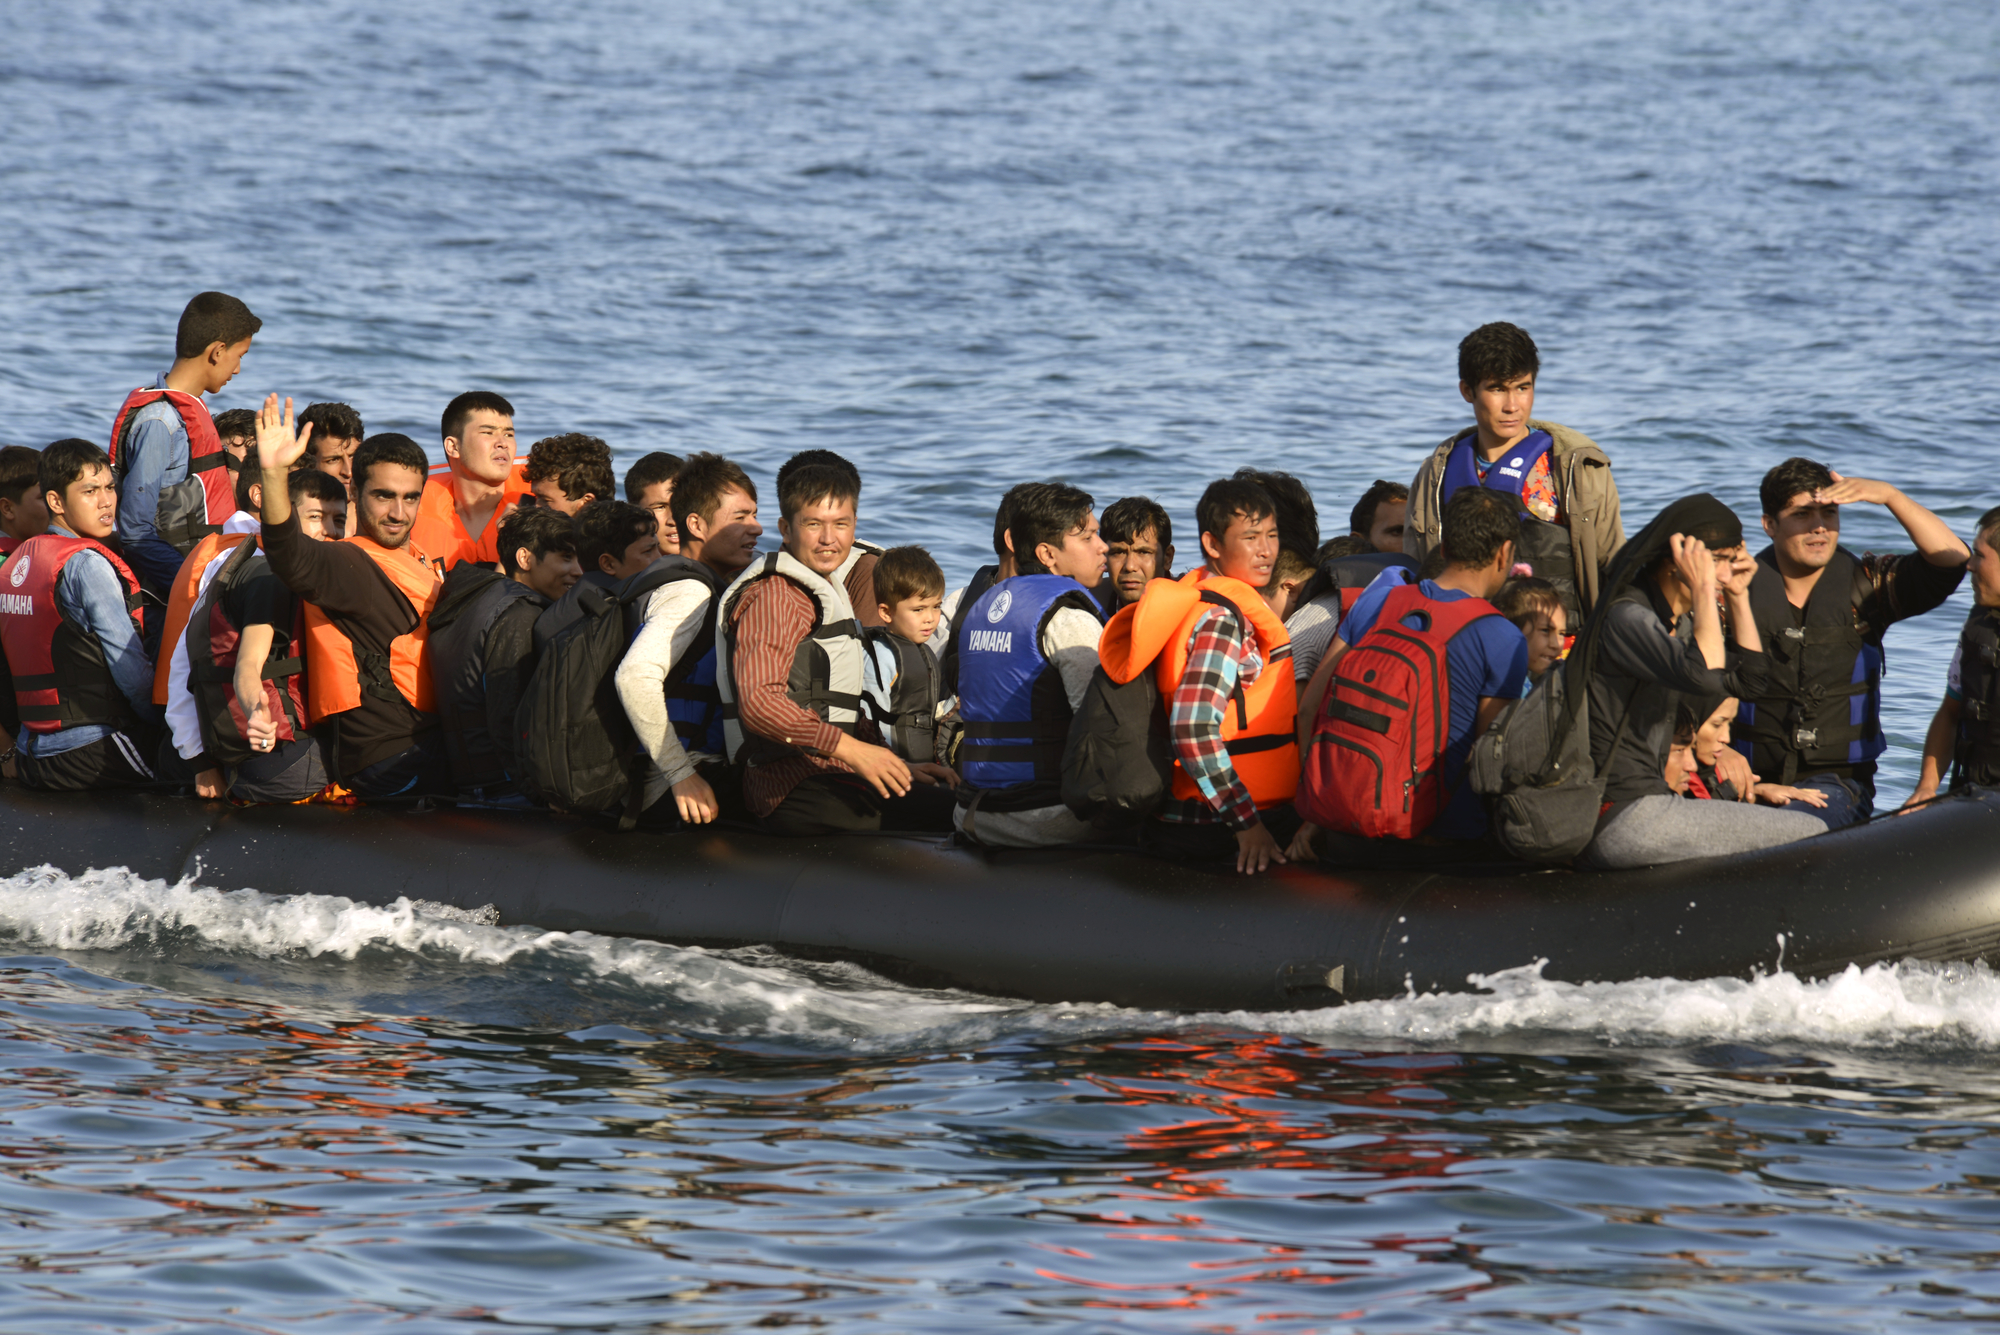 Ismét illegális bevándorlókat vettek fedélzetükre civil hajók a Földközi-Tengeren